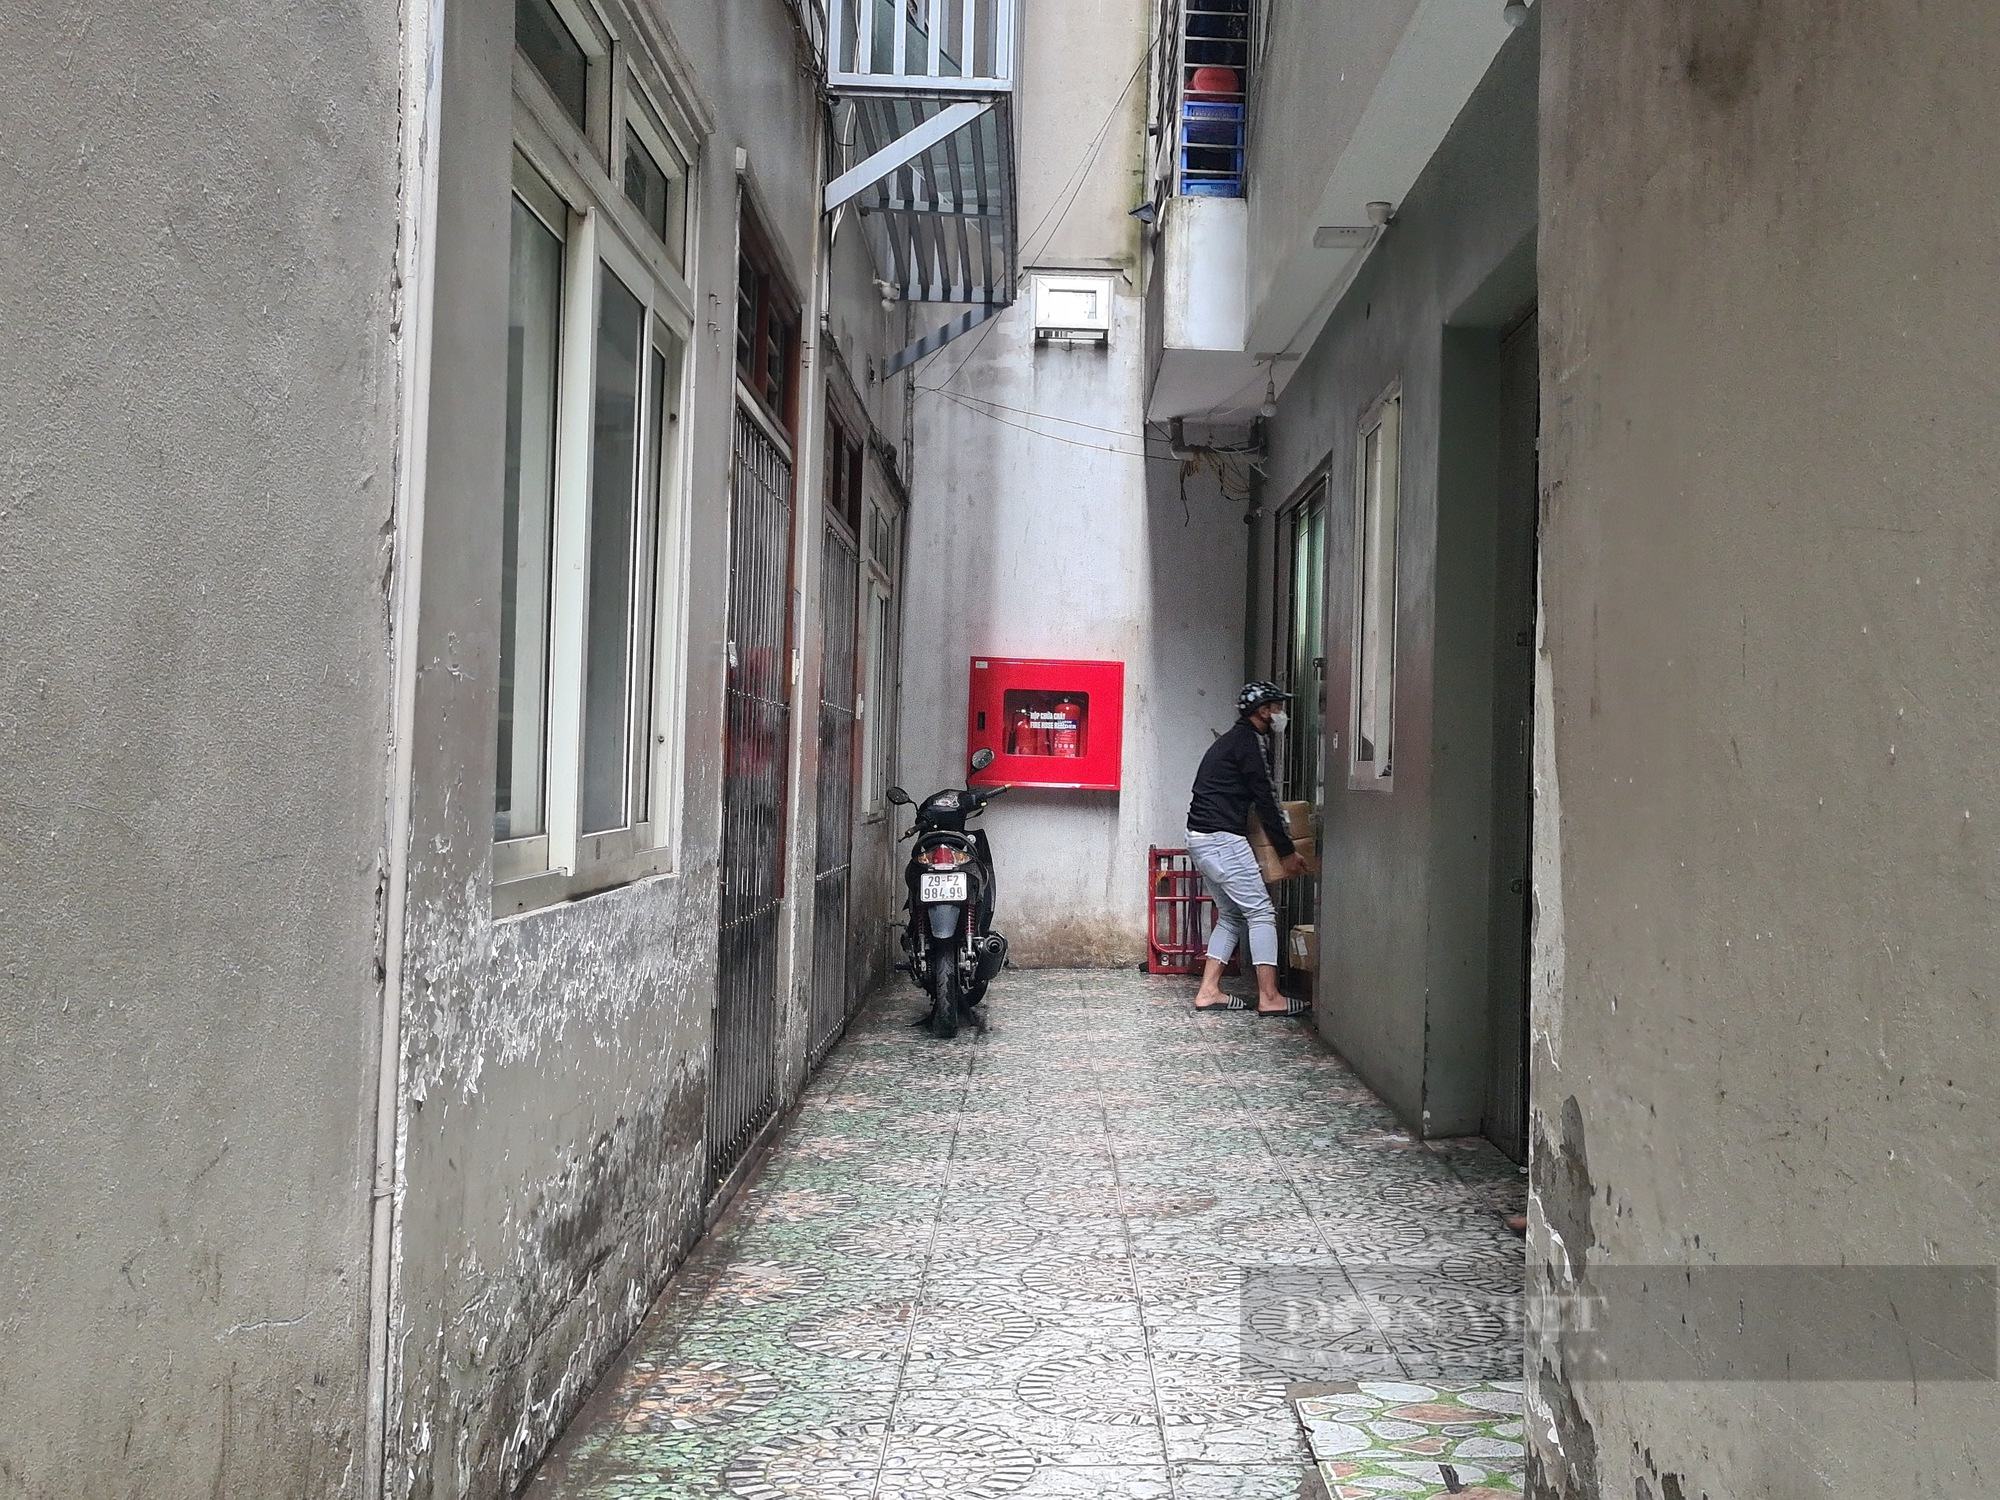 Cận cảnh khu chung cư mini khác của Nghiêm Quang Minh dính sai phạm, vi phạm PCCC tại phường Trung Liệt - Ảnh 9.